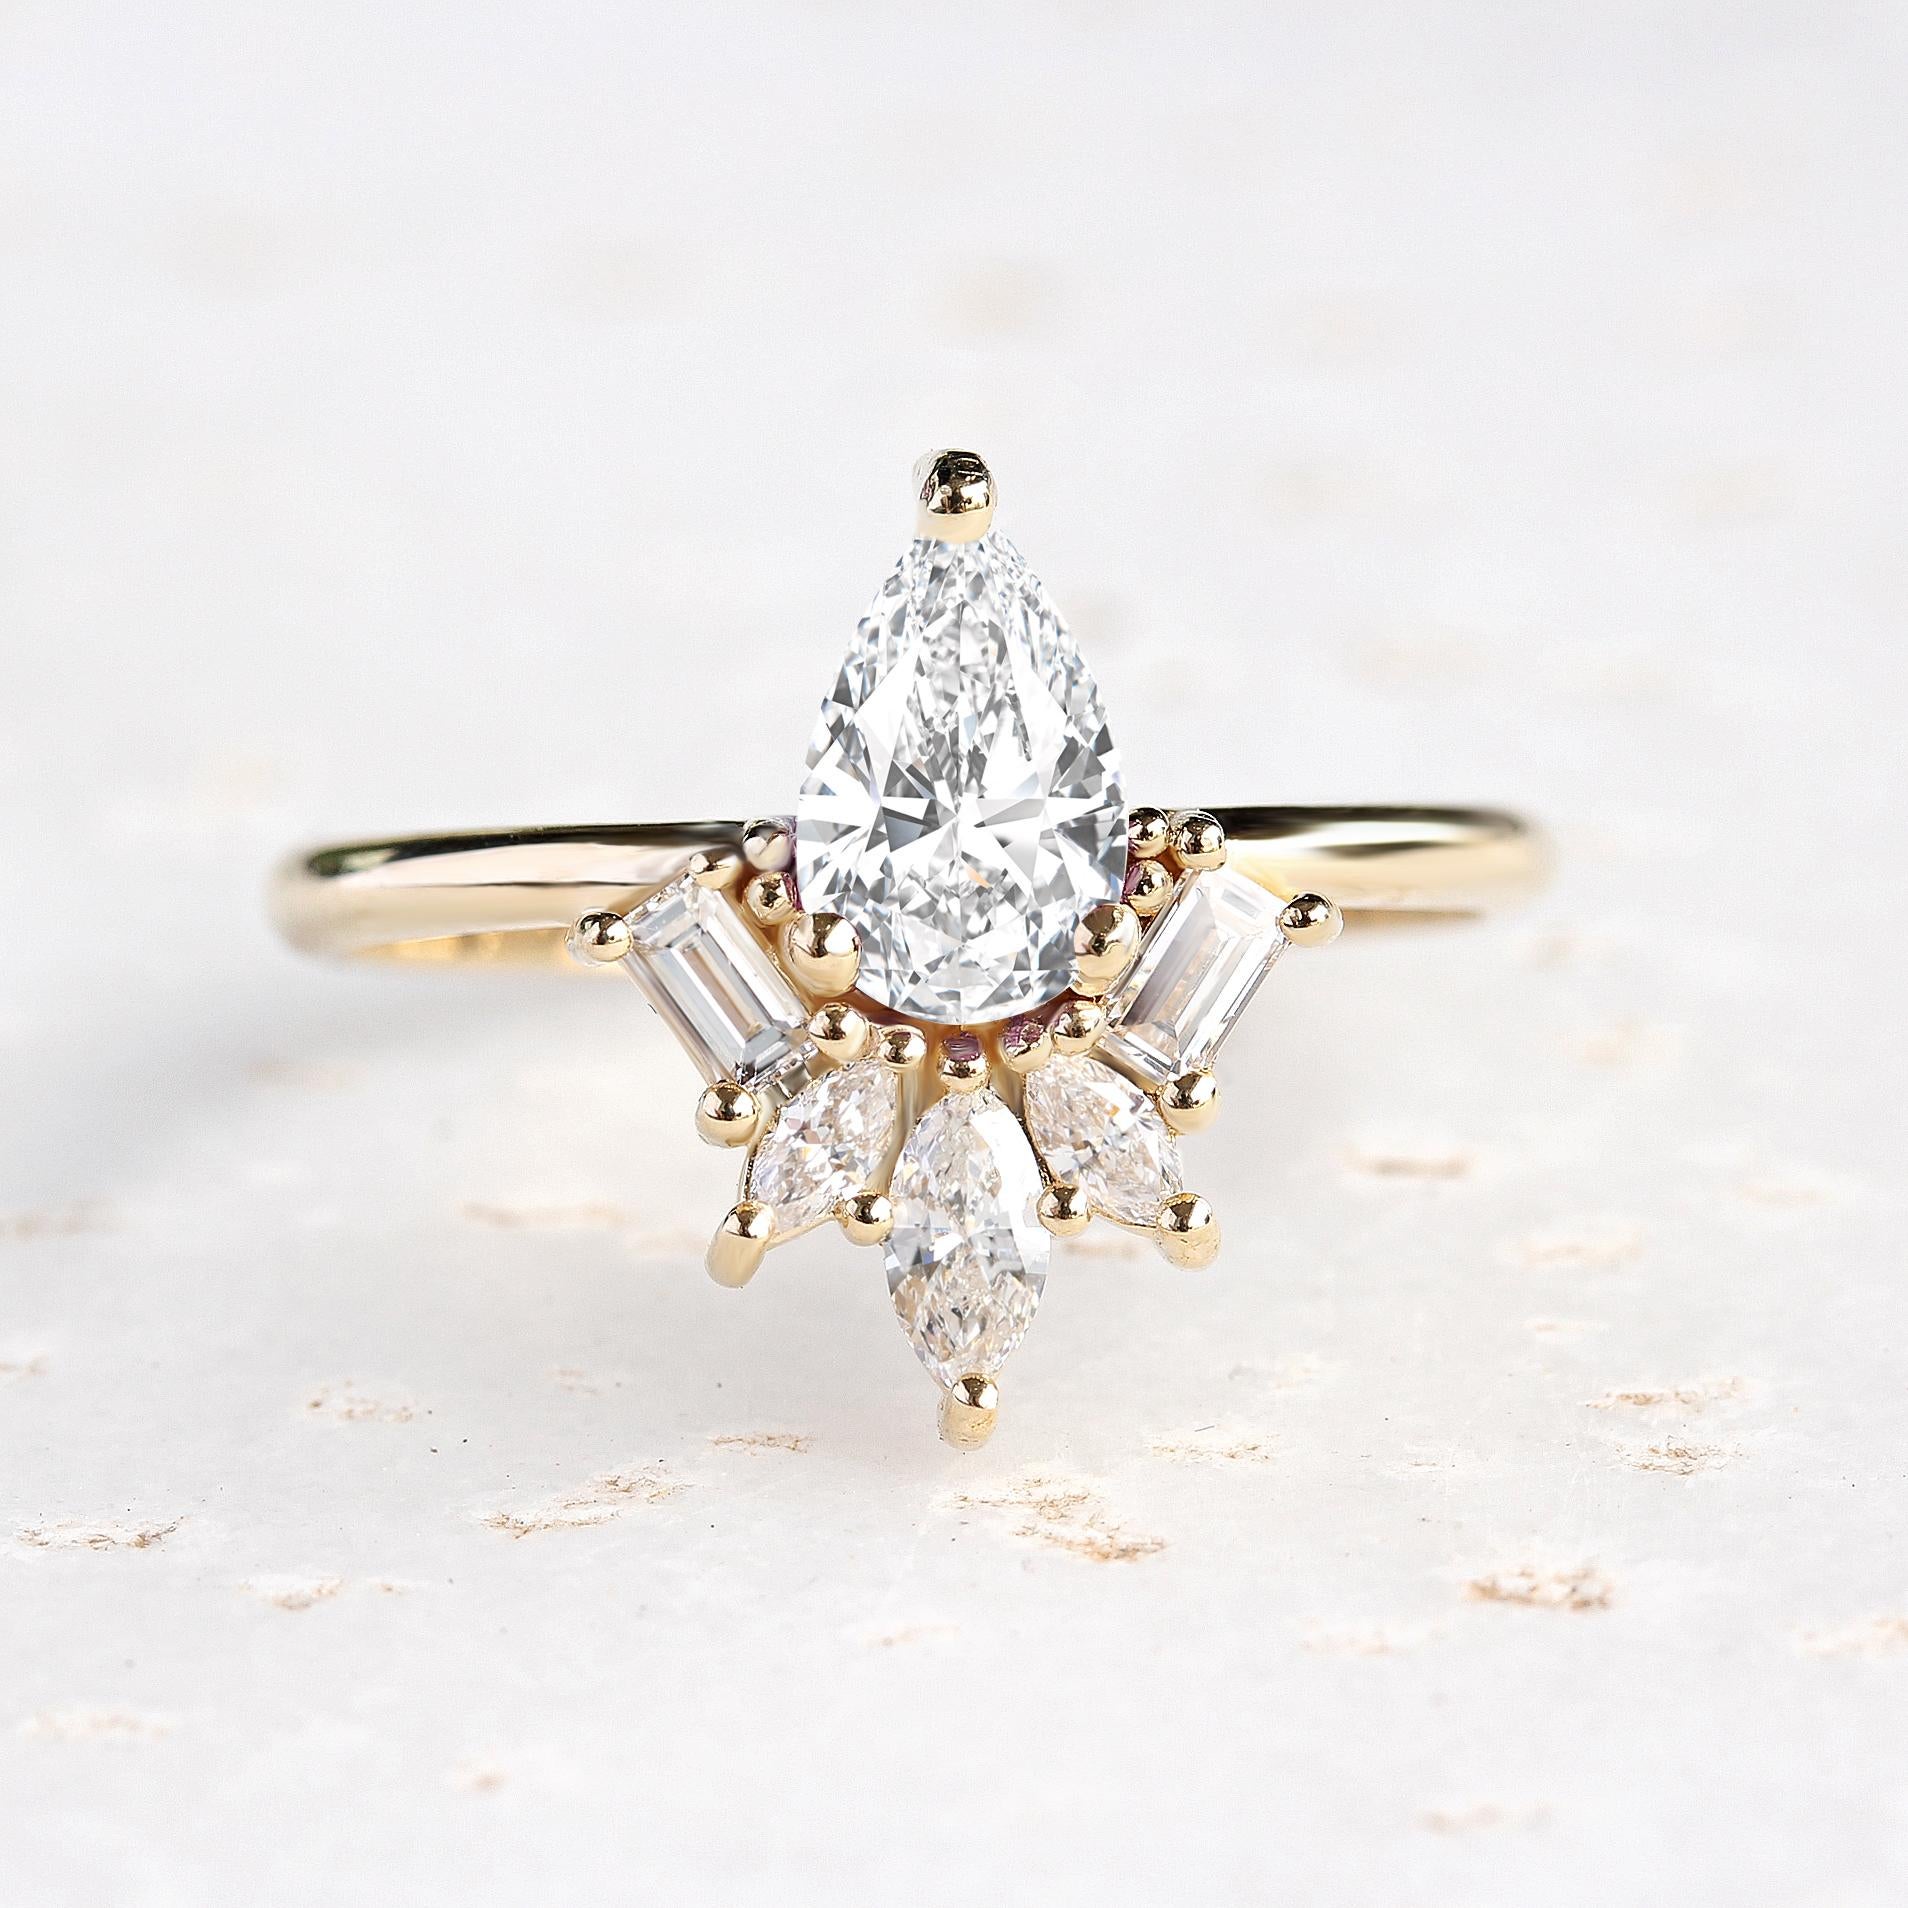 Einzigartiger Art-Déco-Verlobungsring in Birnenform mit Diamanten - 